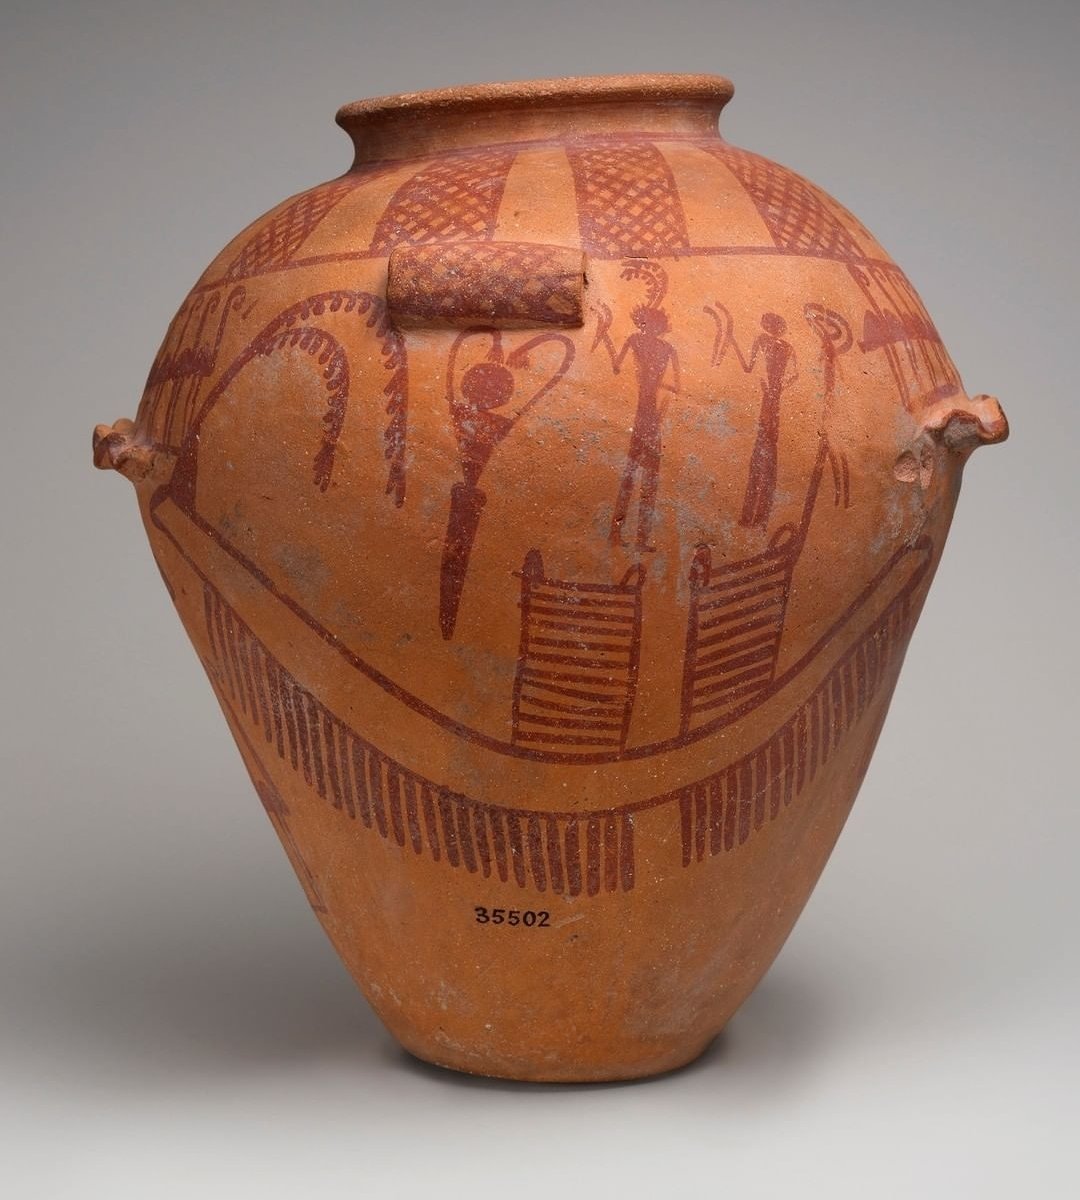 6 millénaires d'histoire vous contemplent ⤵️

Magnificence des poteries de Nagada #ÉgyptePreDynastique à l'occasion du #BlackHistoryMonth2021 @britishmuseum 
instagram.com/p/CVnlRPPotMv/…